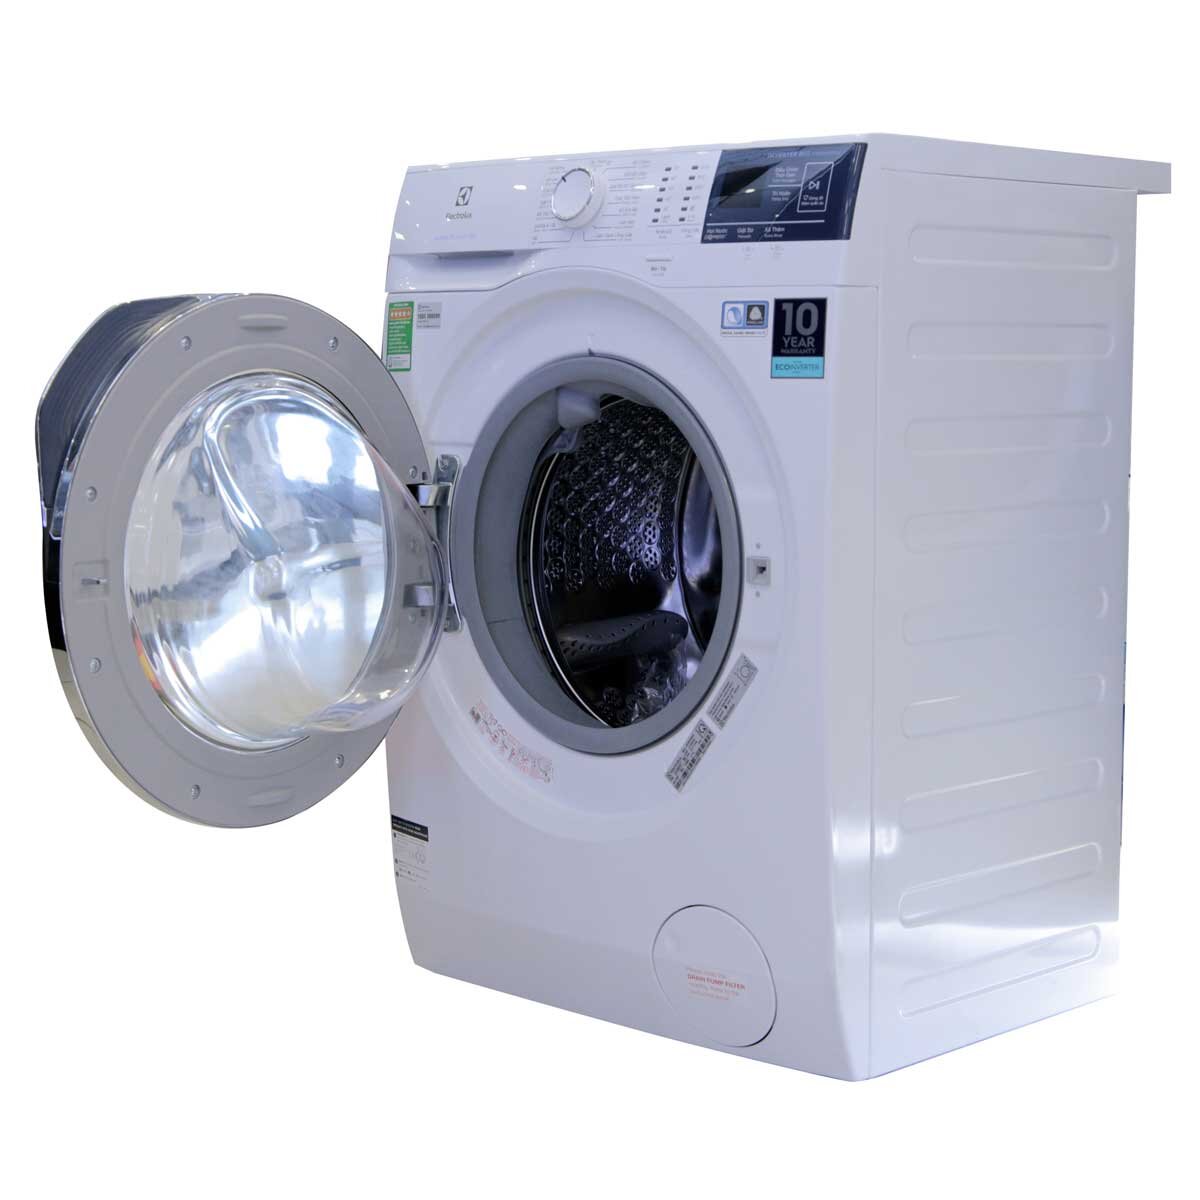 Tìm hiểu ưu điểm của máy giặt Electrolux 